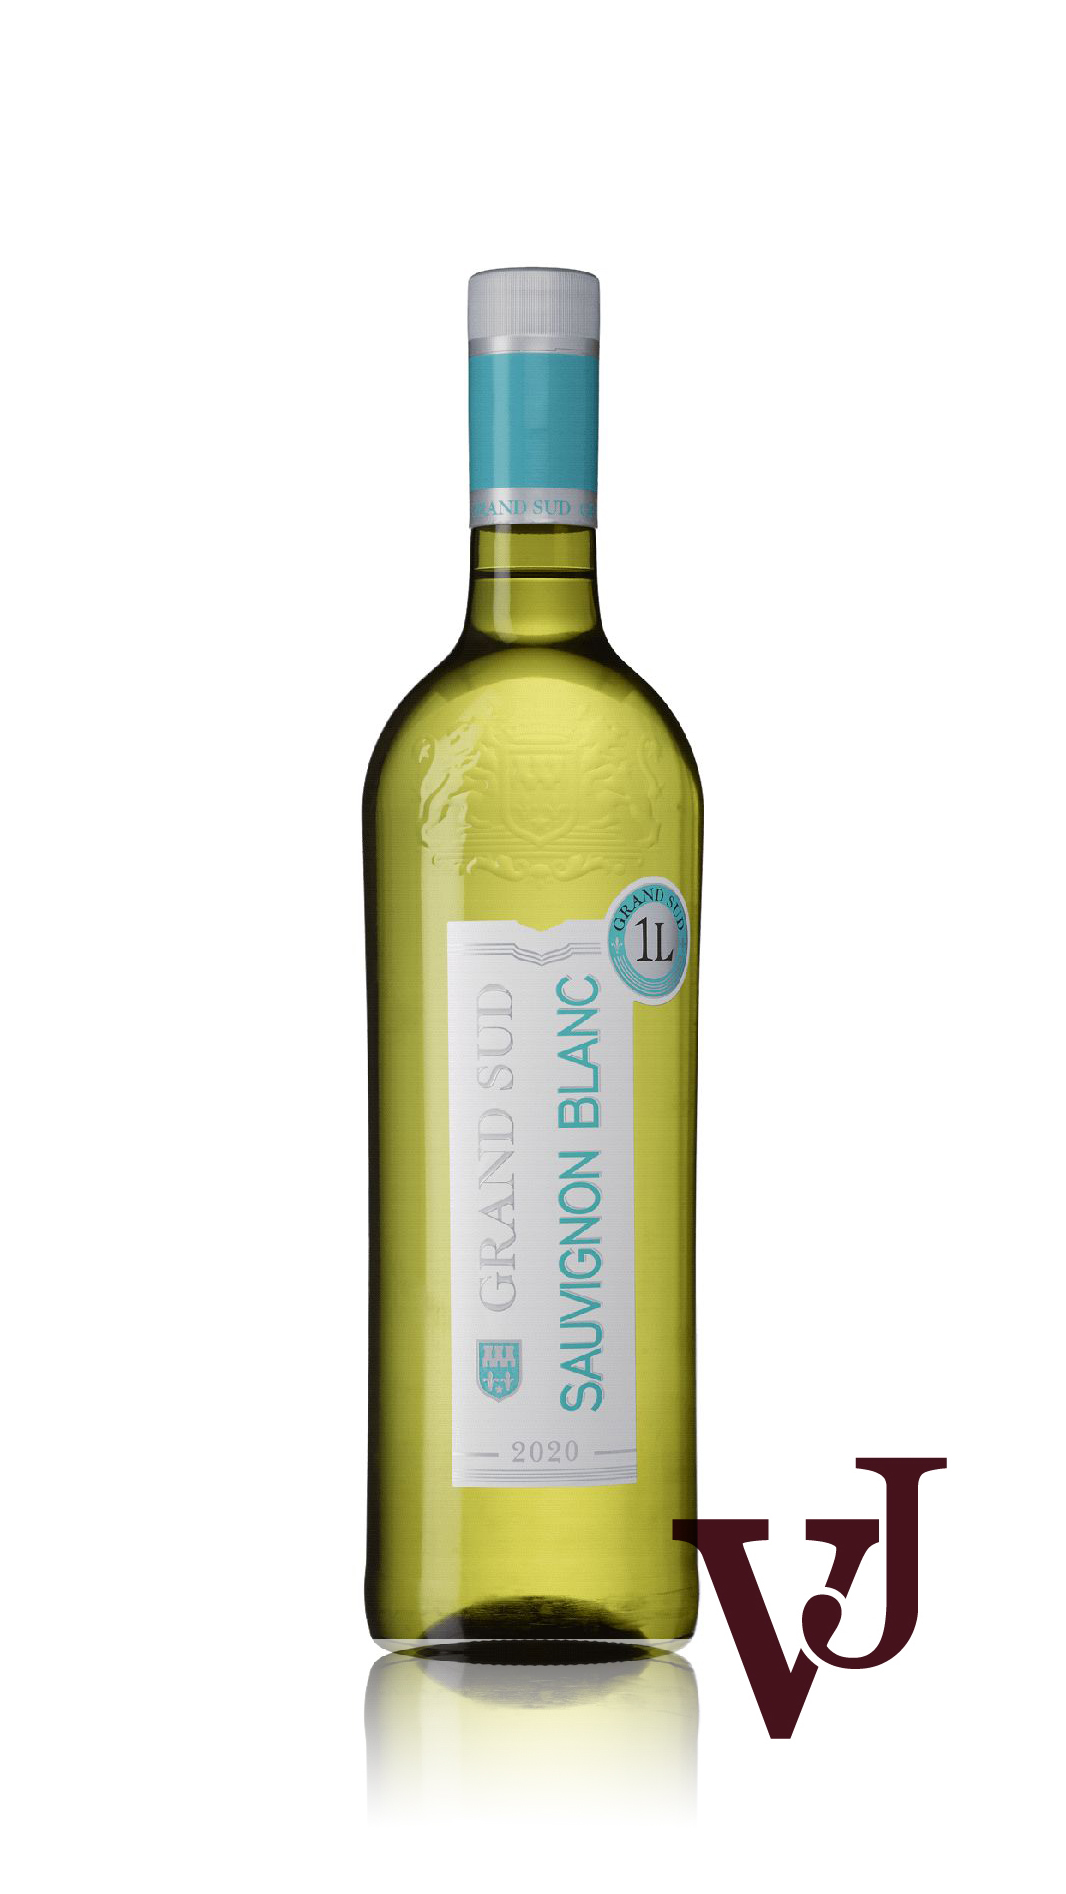 Vitt Vin - Grand Sud Sauvignon Blanc artikel nummer 7203701 från producenten Grand Sud från området Frankrike - Vinjournalen.se